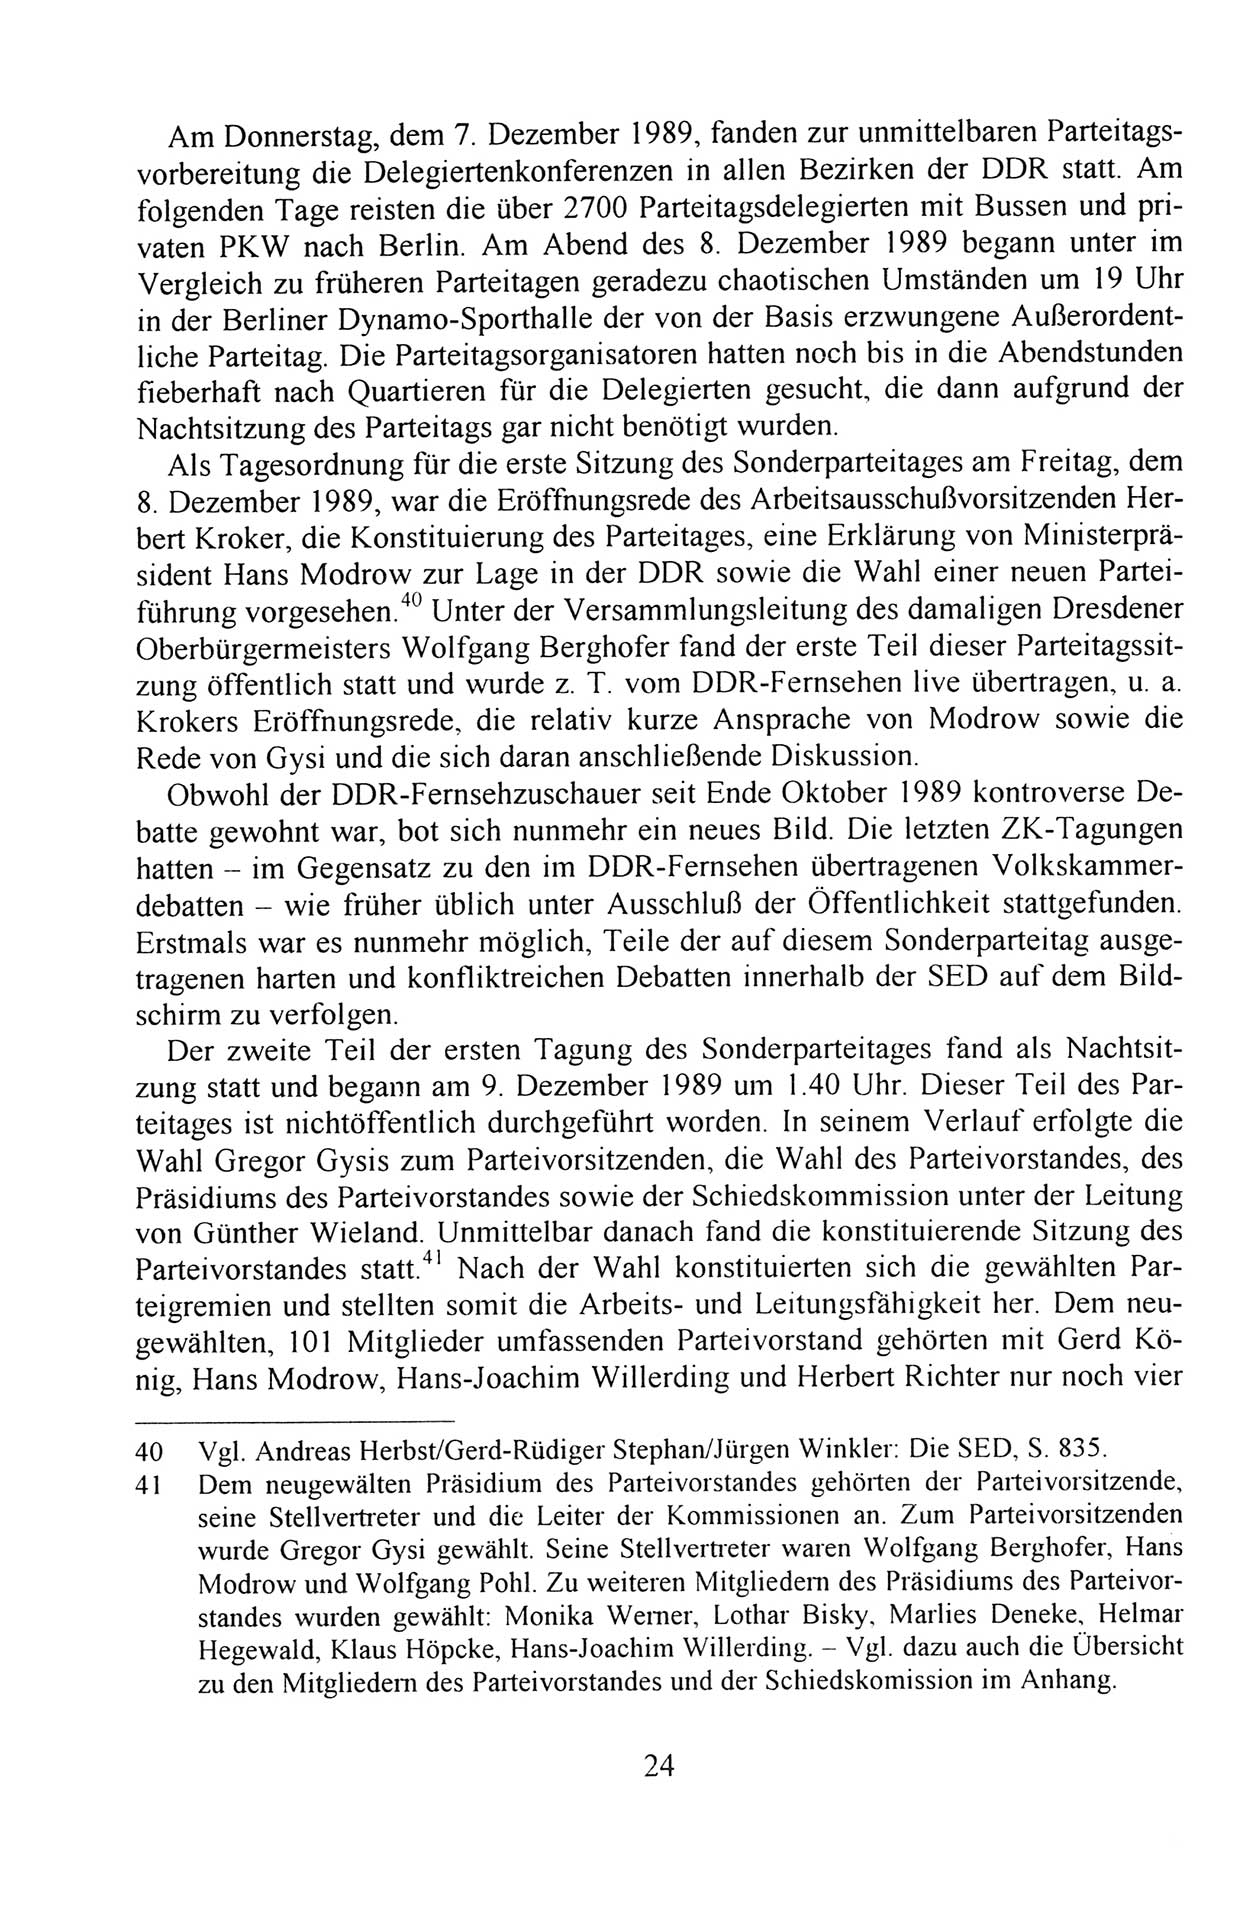 Außerordentlicher Parteitag der SED/PDS (Sozialistische Einheitspartei Deutschlands/Partei des Demokratischen Sozialismus) [Deutsche Demokratische Republik (DDR)], Protokoll der Beratungen am 8./9. und 16./17.12.1989 in Berlin 1989, Seite 24 (PT. SED/PDS DDR Prot. 1989, S. 24)